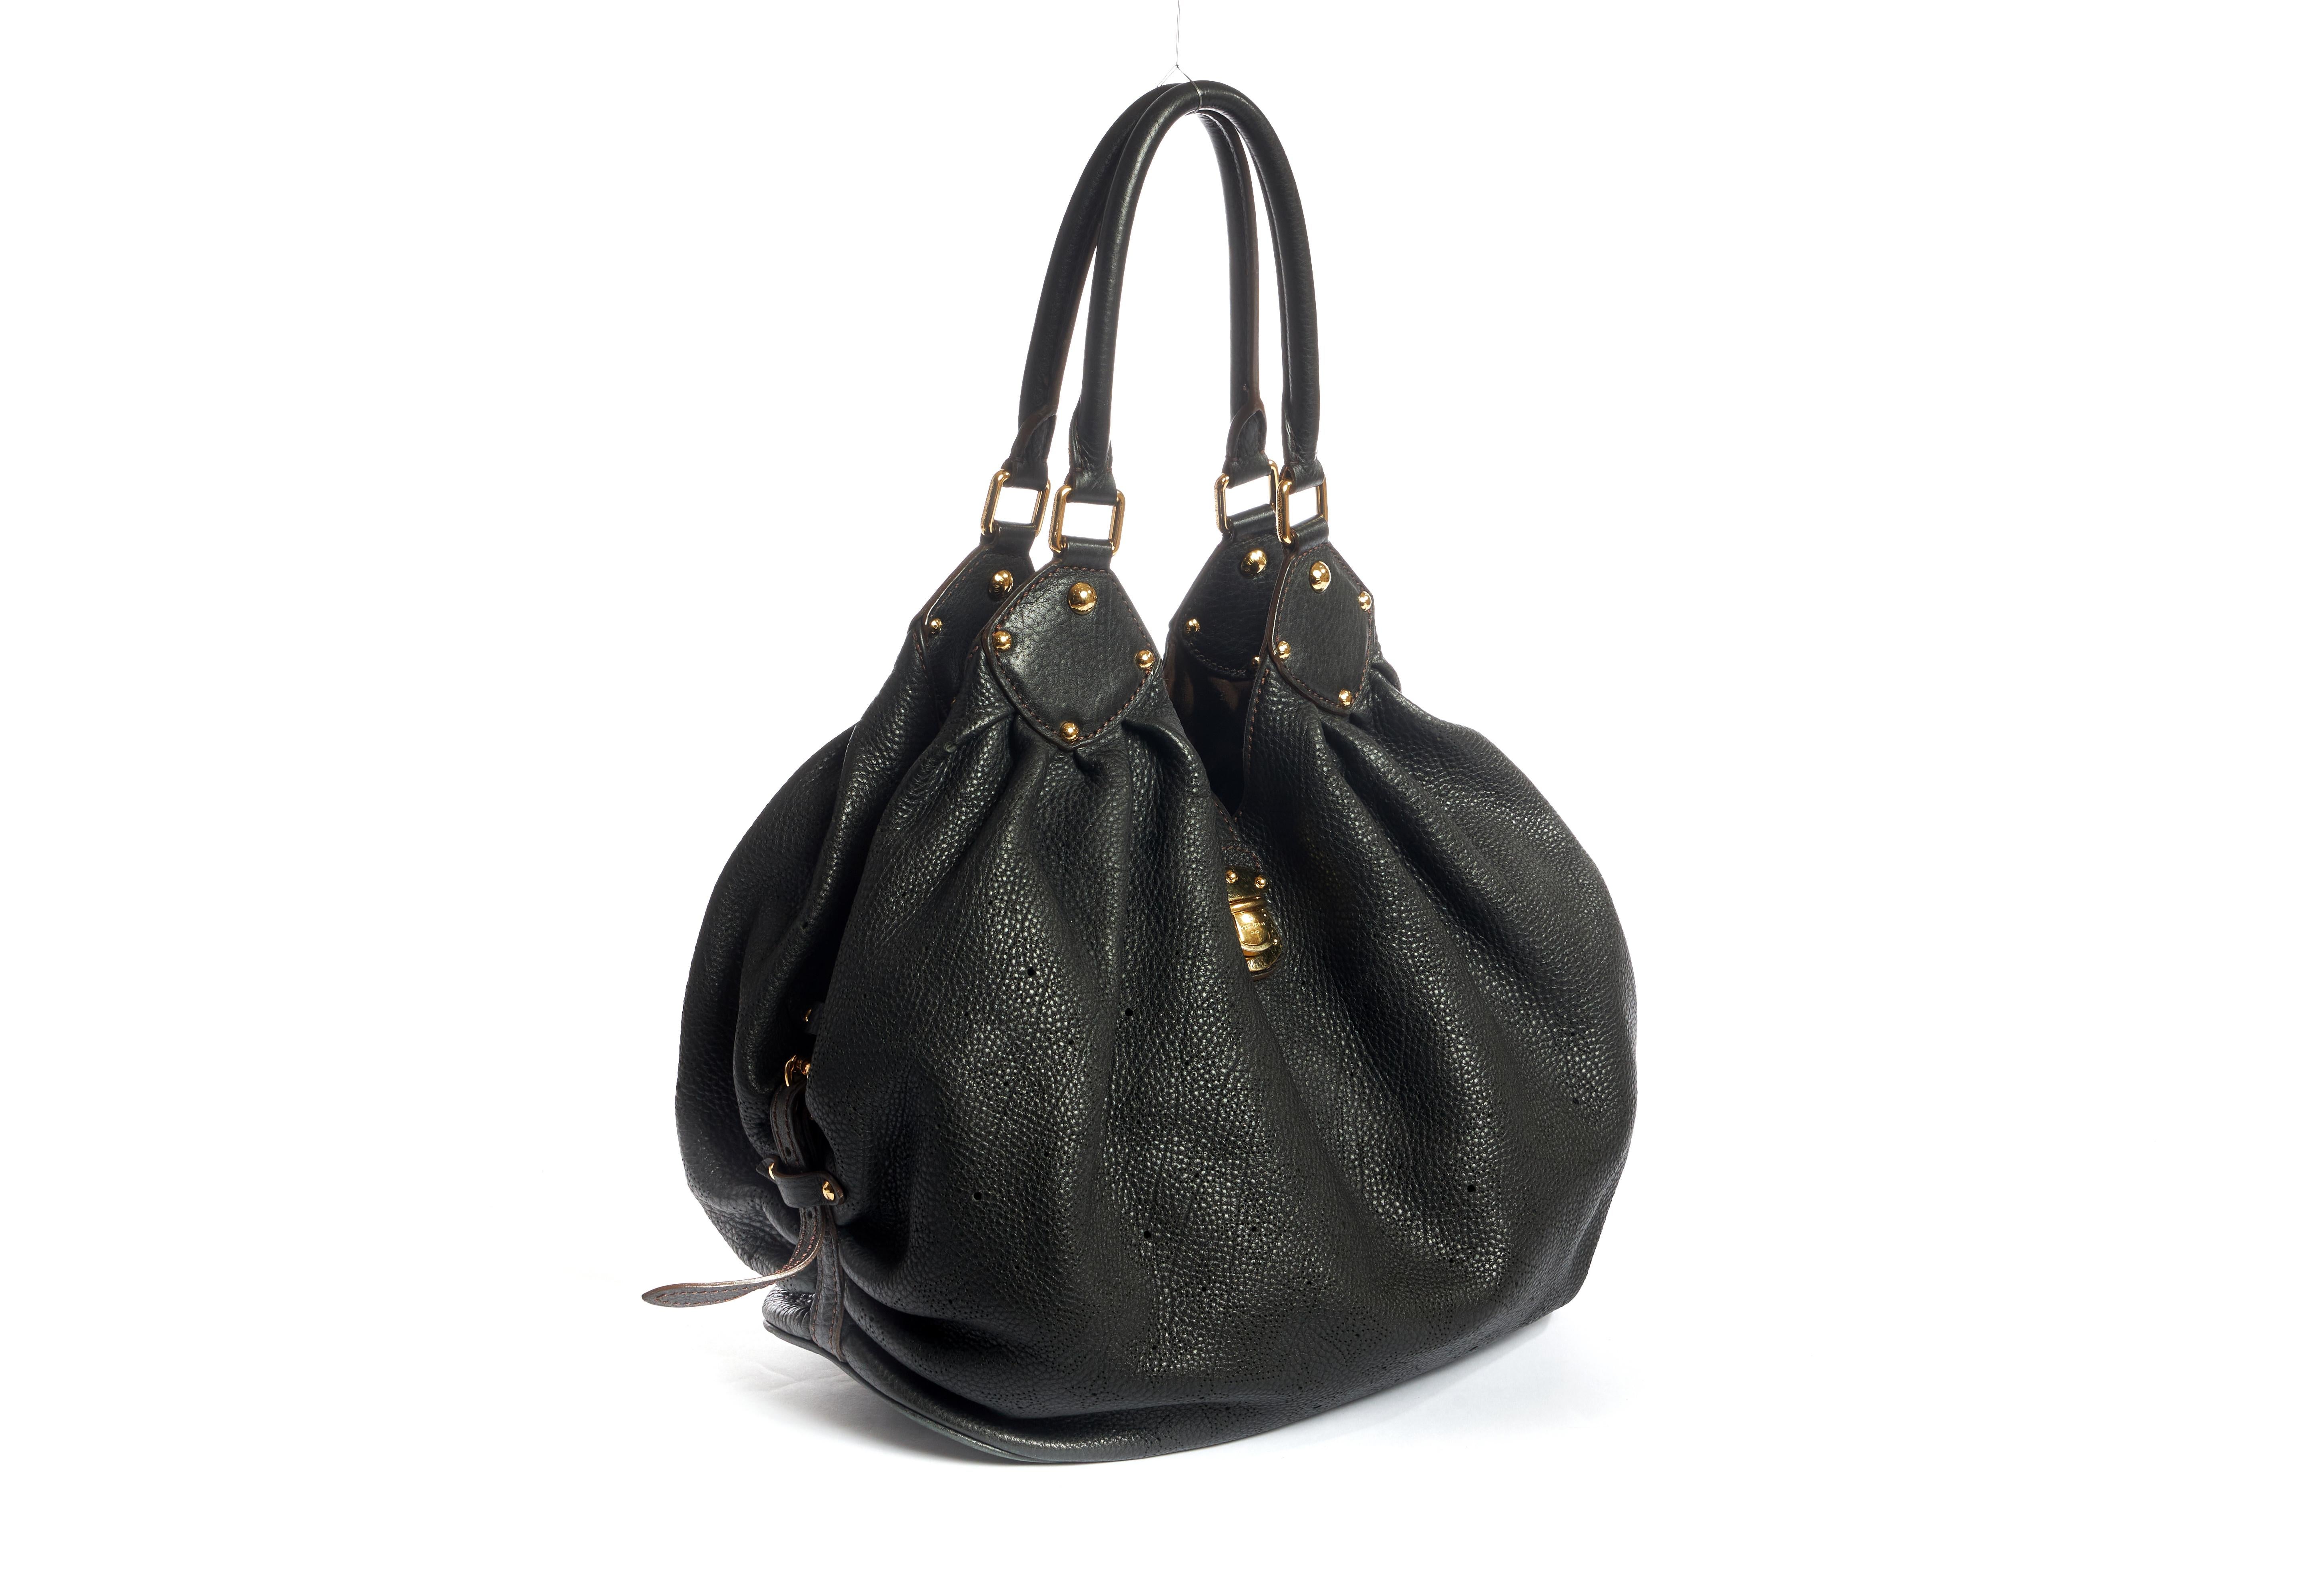 Grand sac mahina en cuir noir perforé Louis Vuitton. La doublure intérieure présente une certaine usure. Epaule de 10